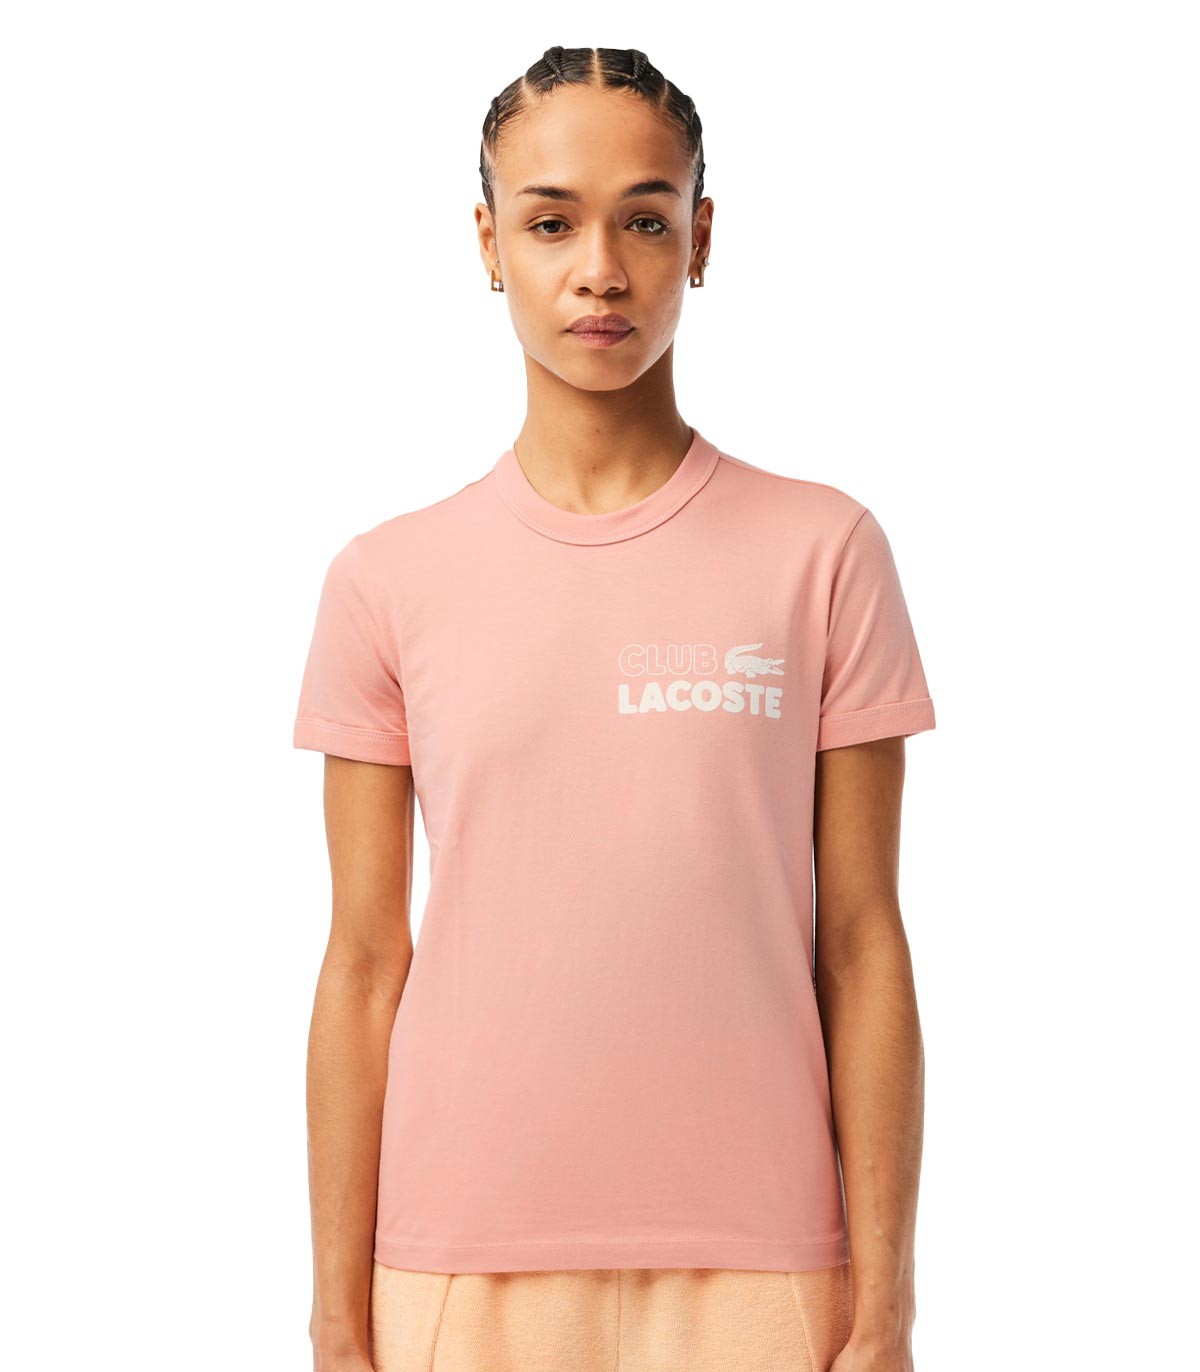 Lacoste - Camiseta Slim Fit - Multicolor